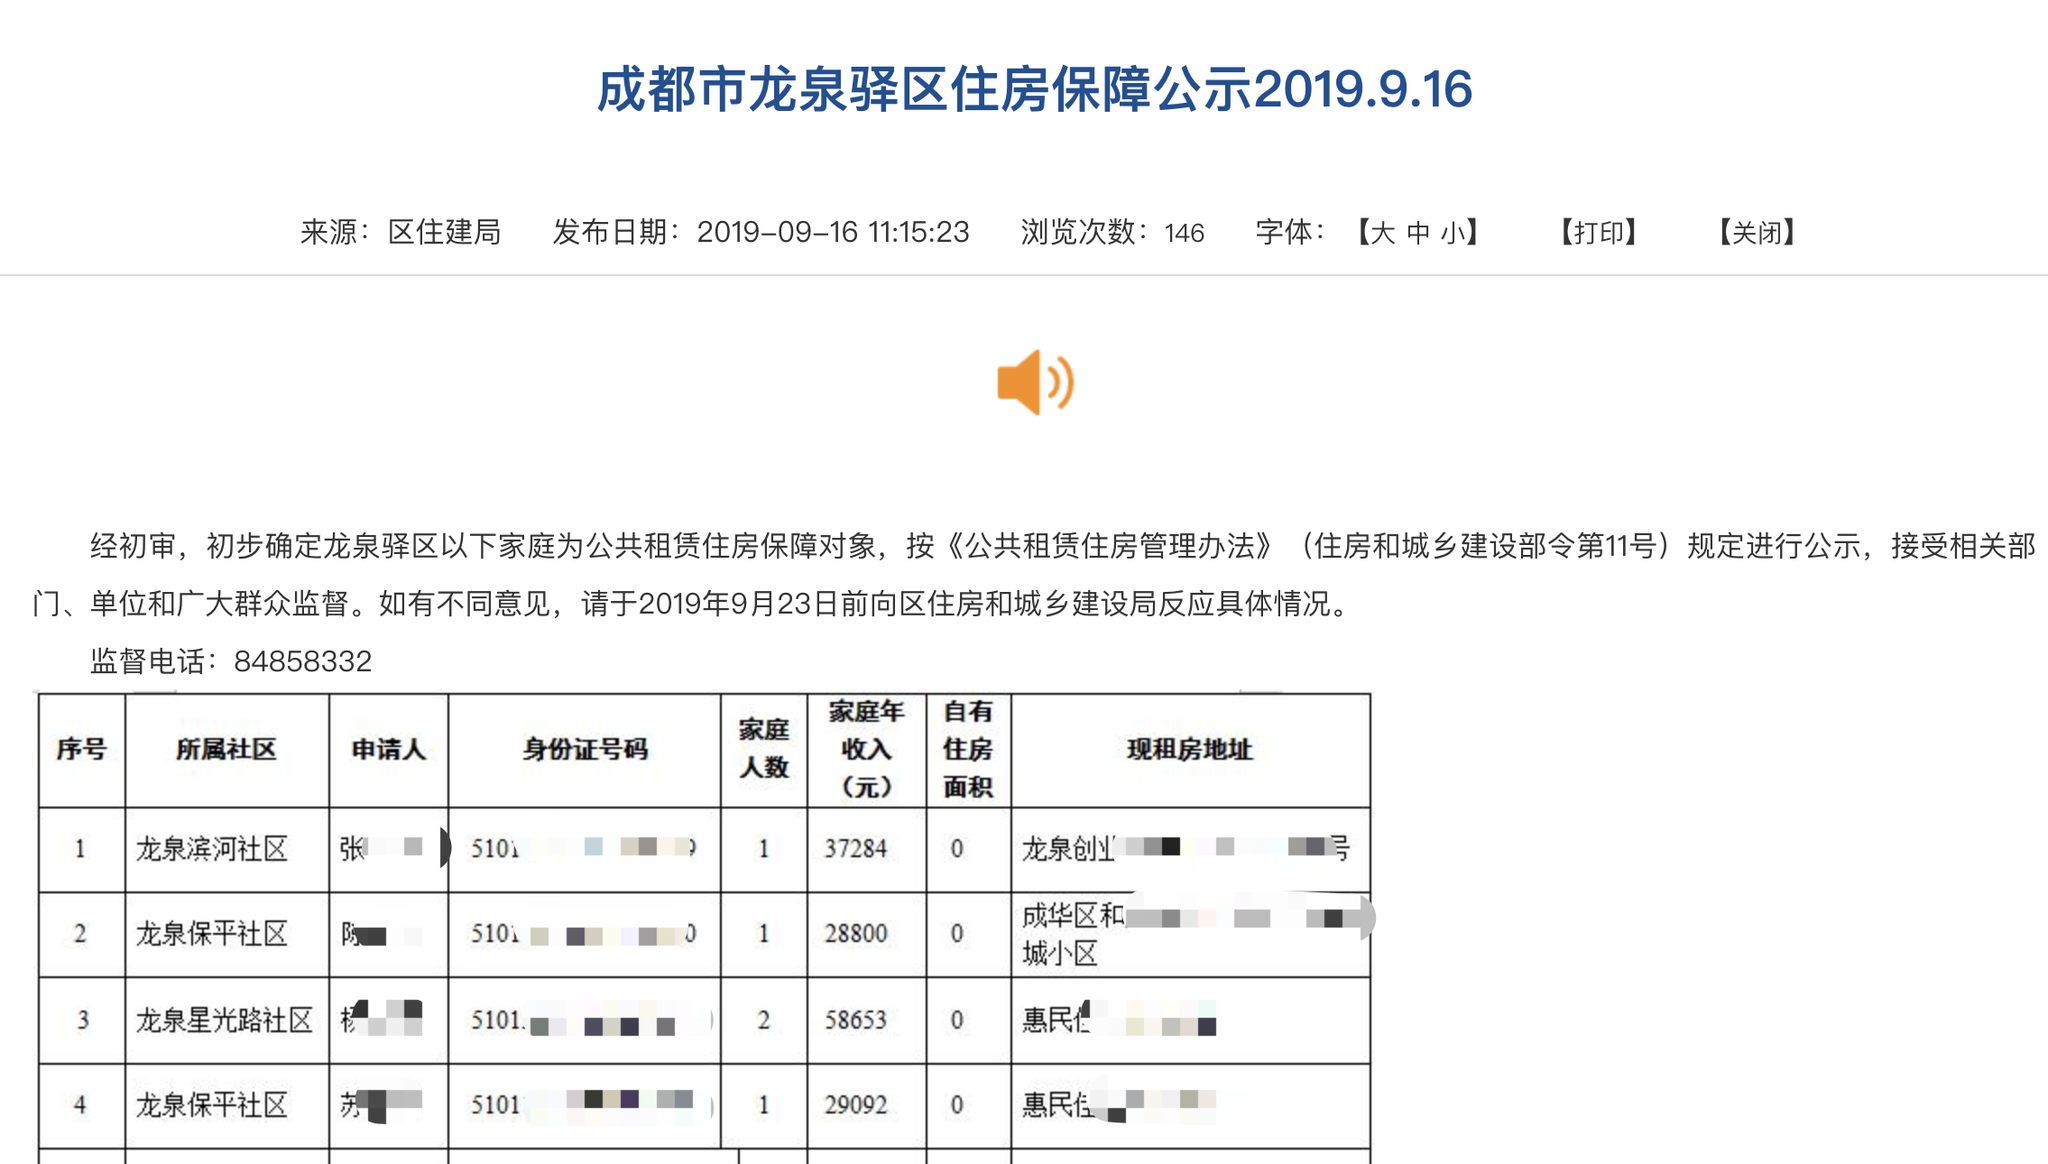 龙泉驿区政府官网上公布的公民身份证号信息。  截屏图